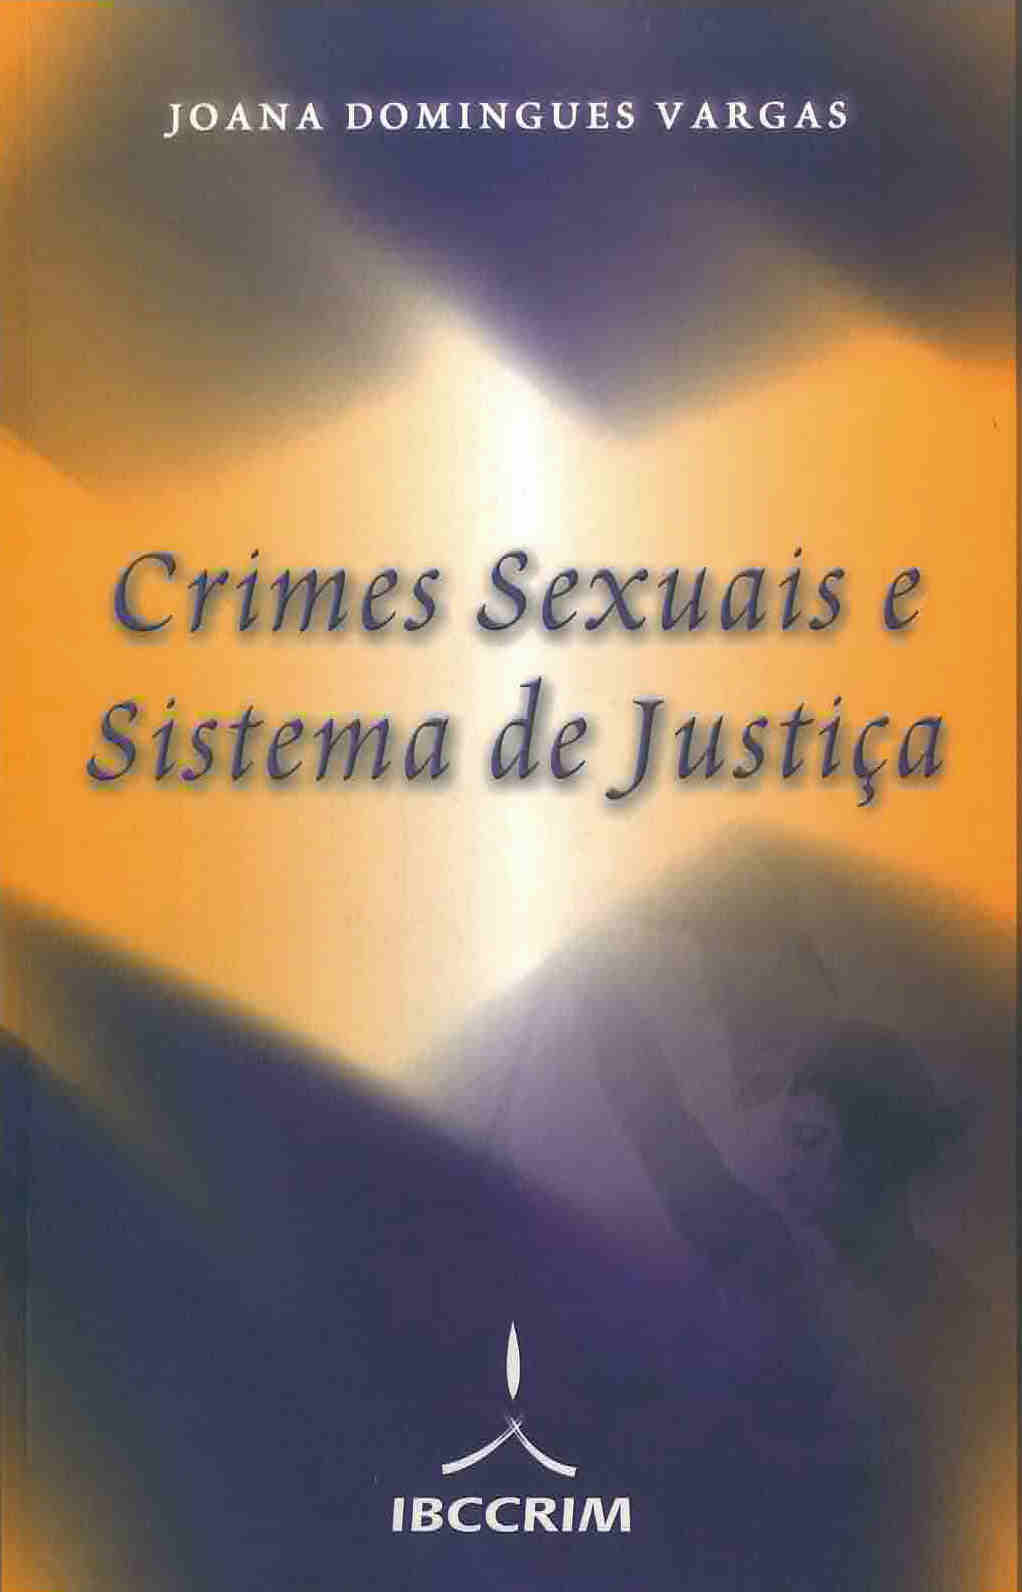 Crimes sexuais e sistema de justica